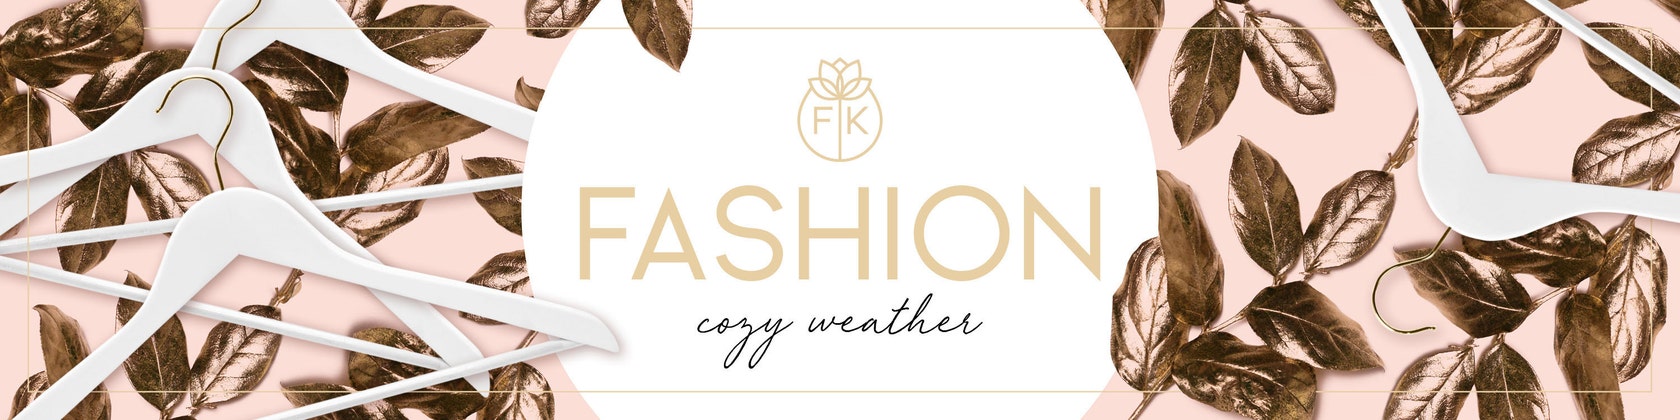 Fairwear Fashion Mode Lieben Leben By Fraukauf On Etsy